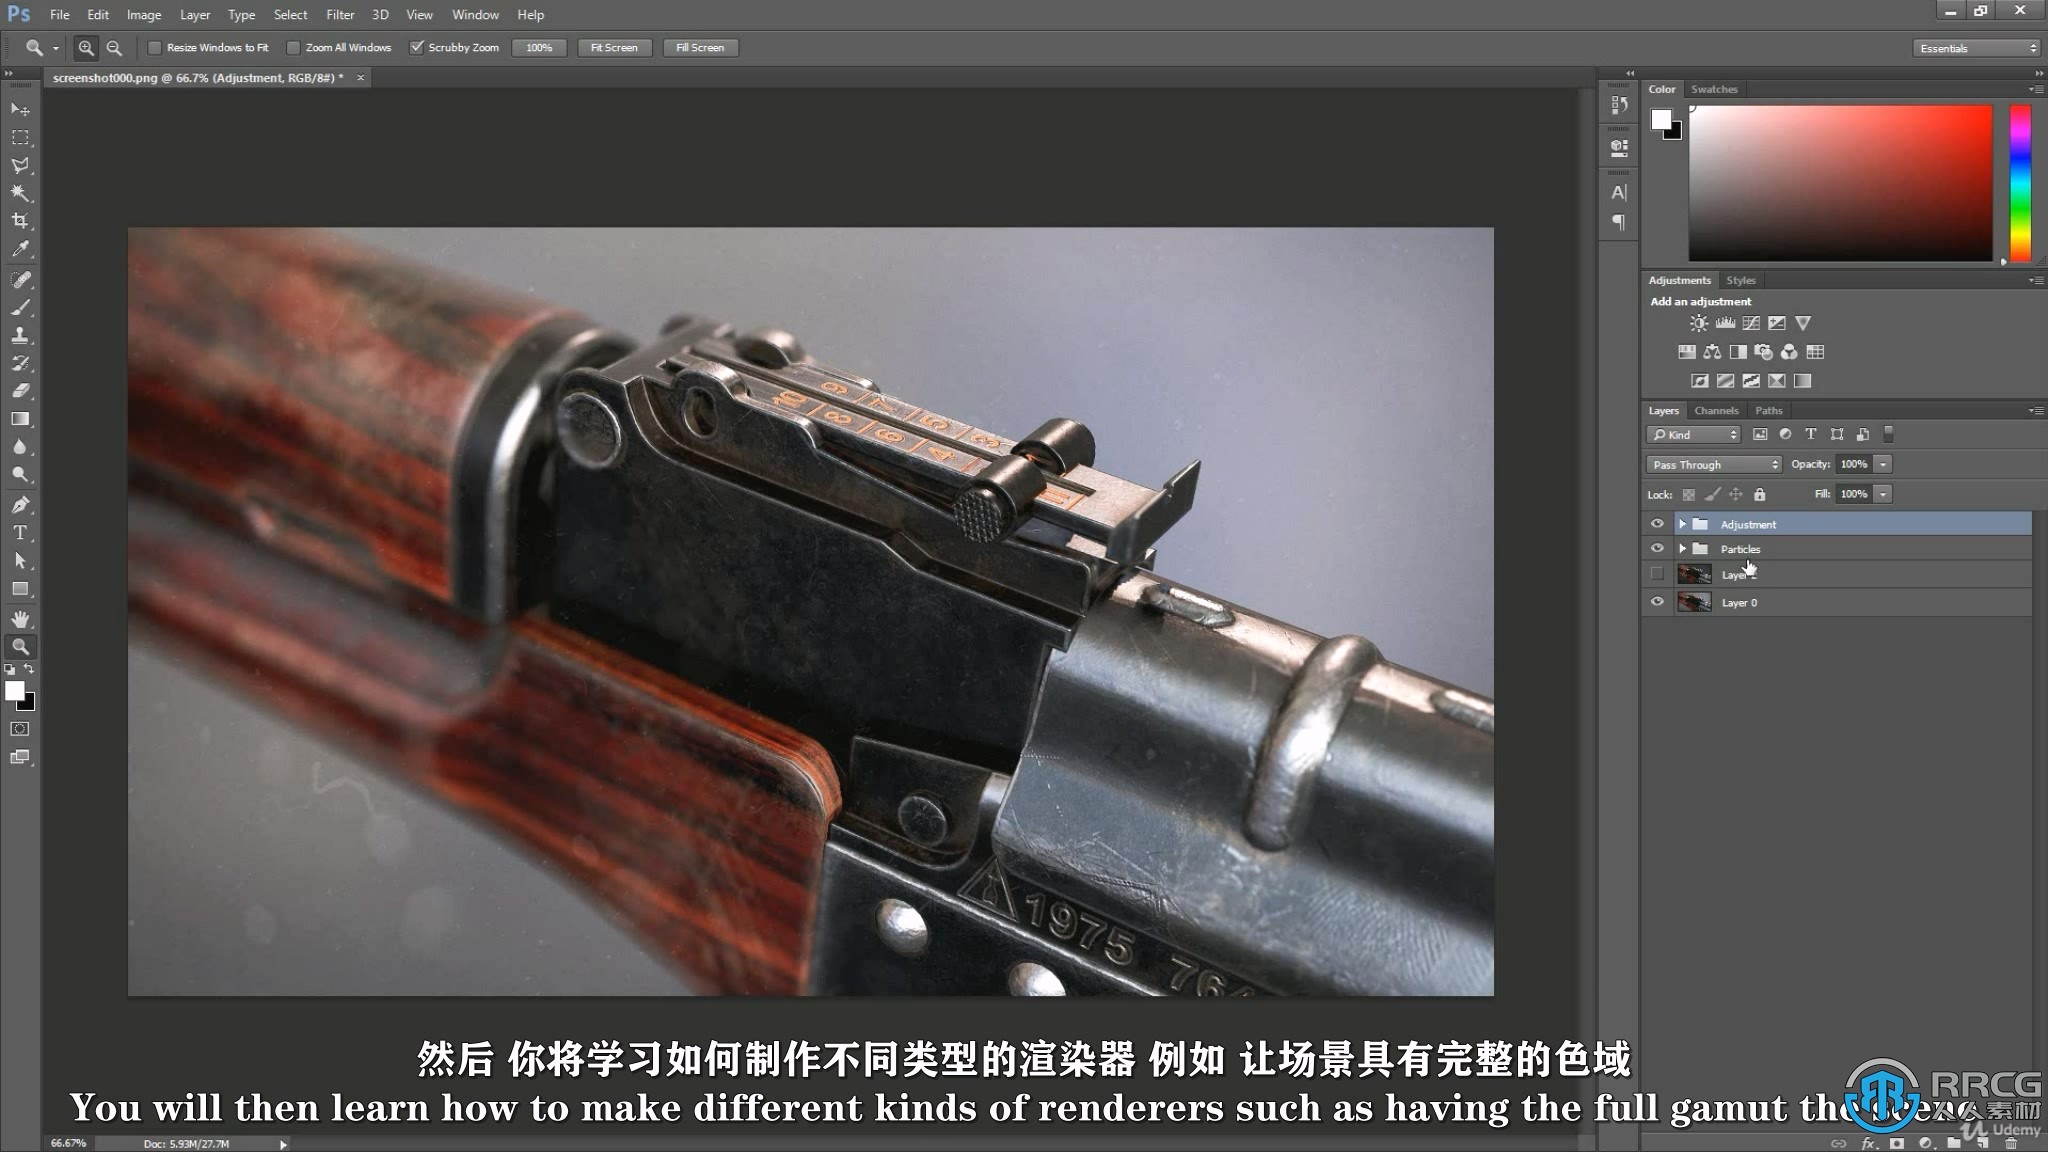 【中文字幕】3dsMax与Substance Painter电子游戏武器完整制作流程视频教程